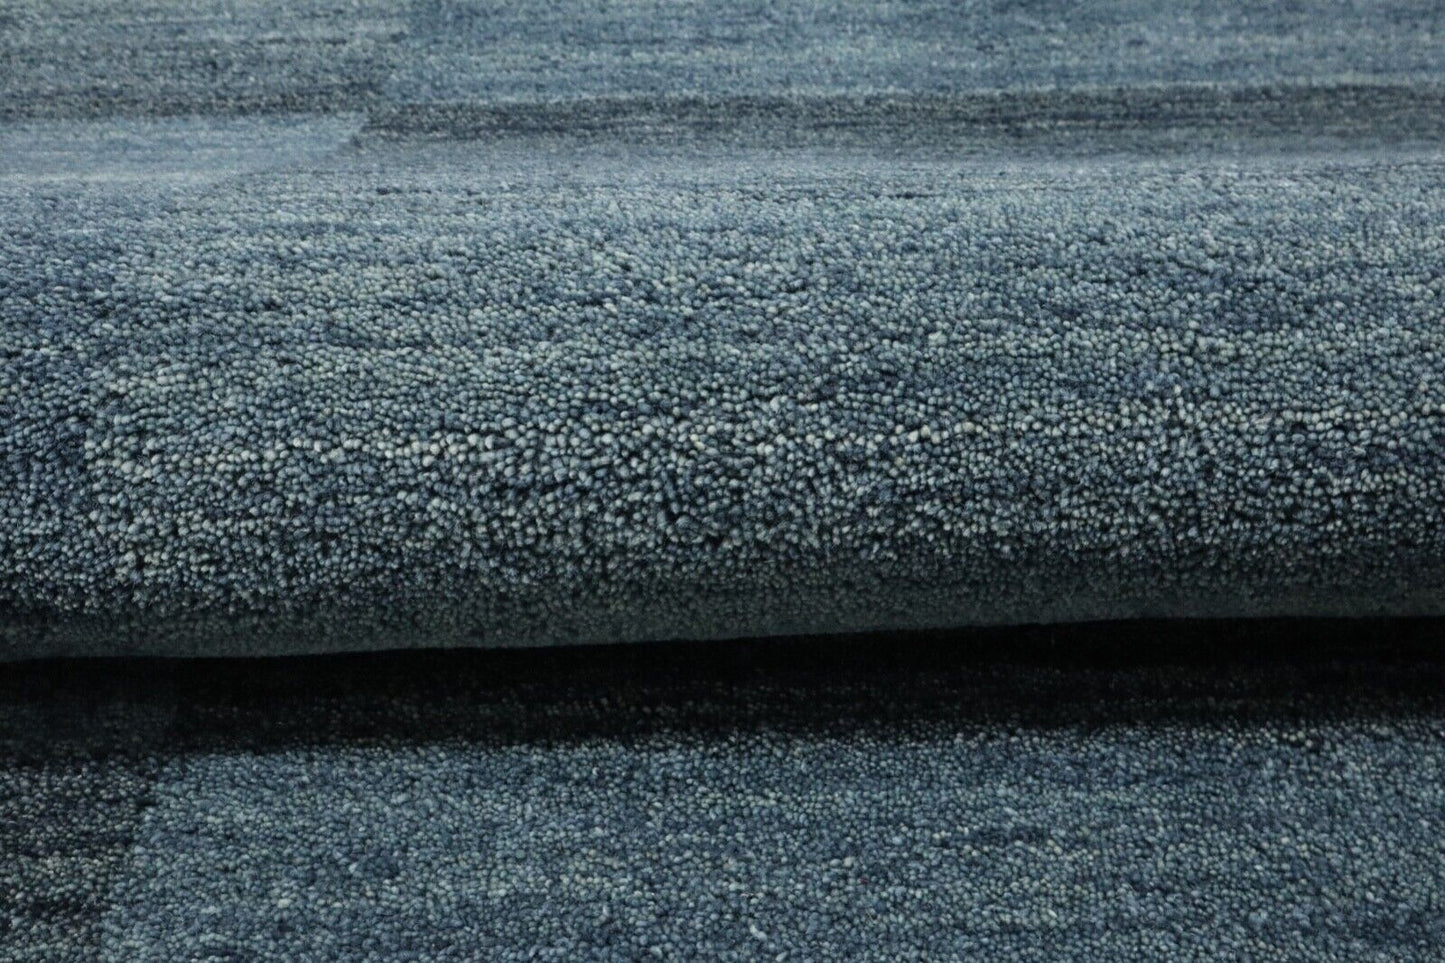 Teppich 100% Wolle 120X180 cm Handarbeit Hell Blau Handgetuftet T965